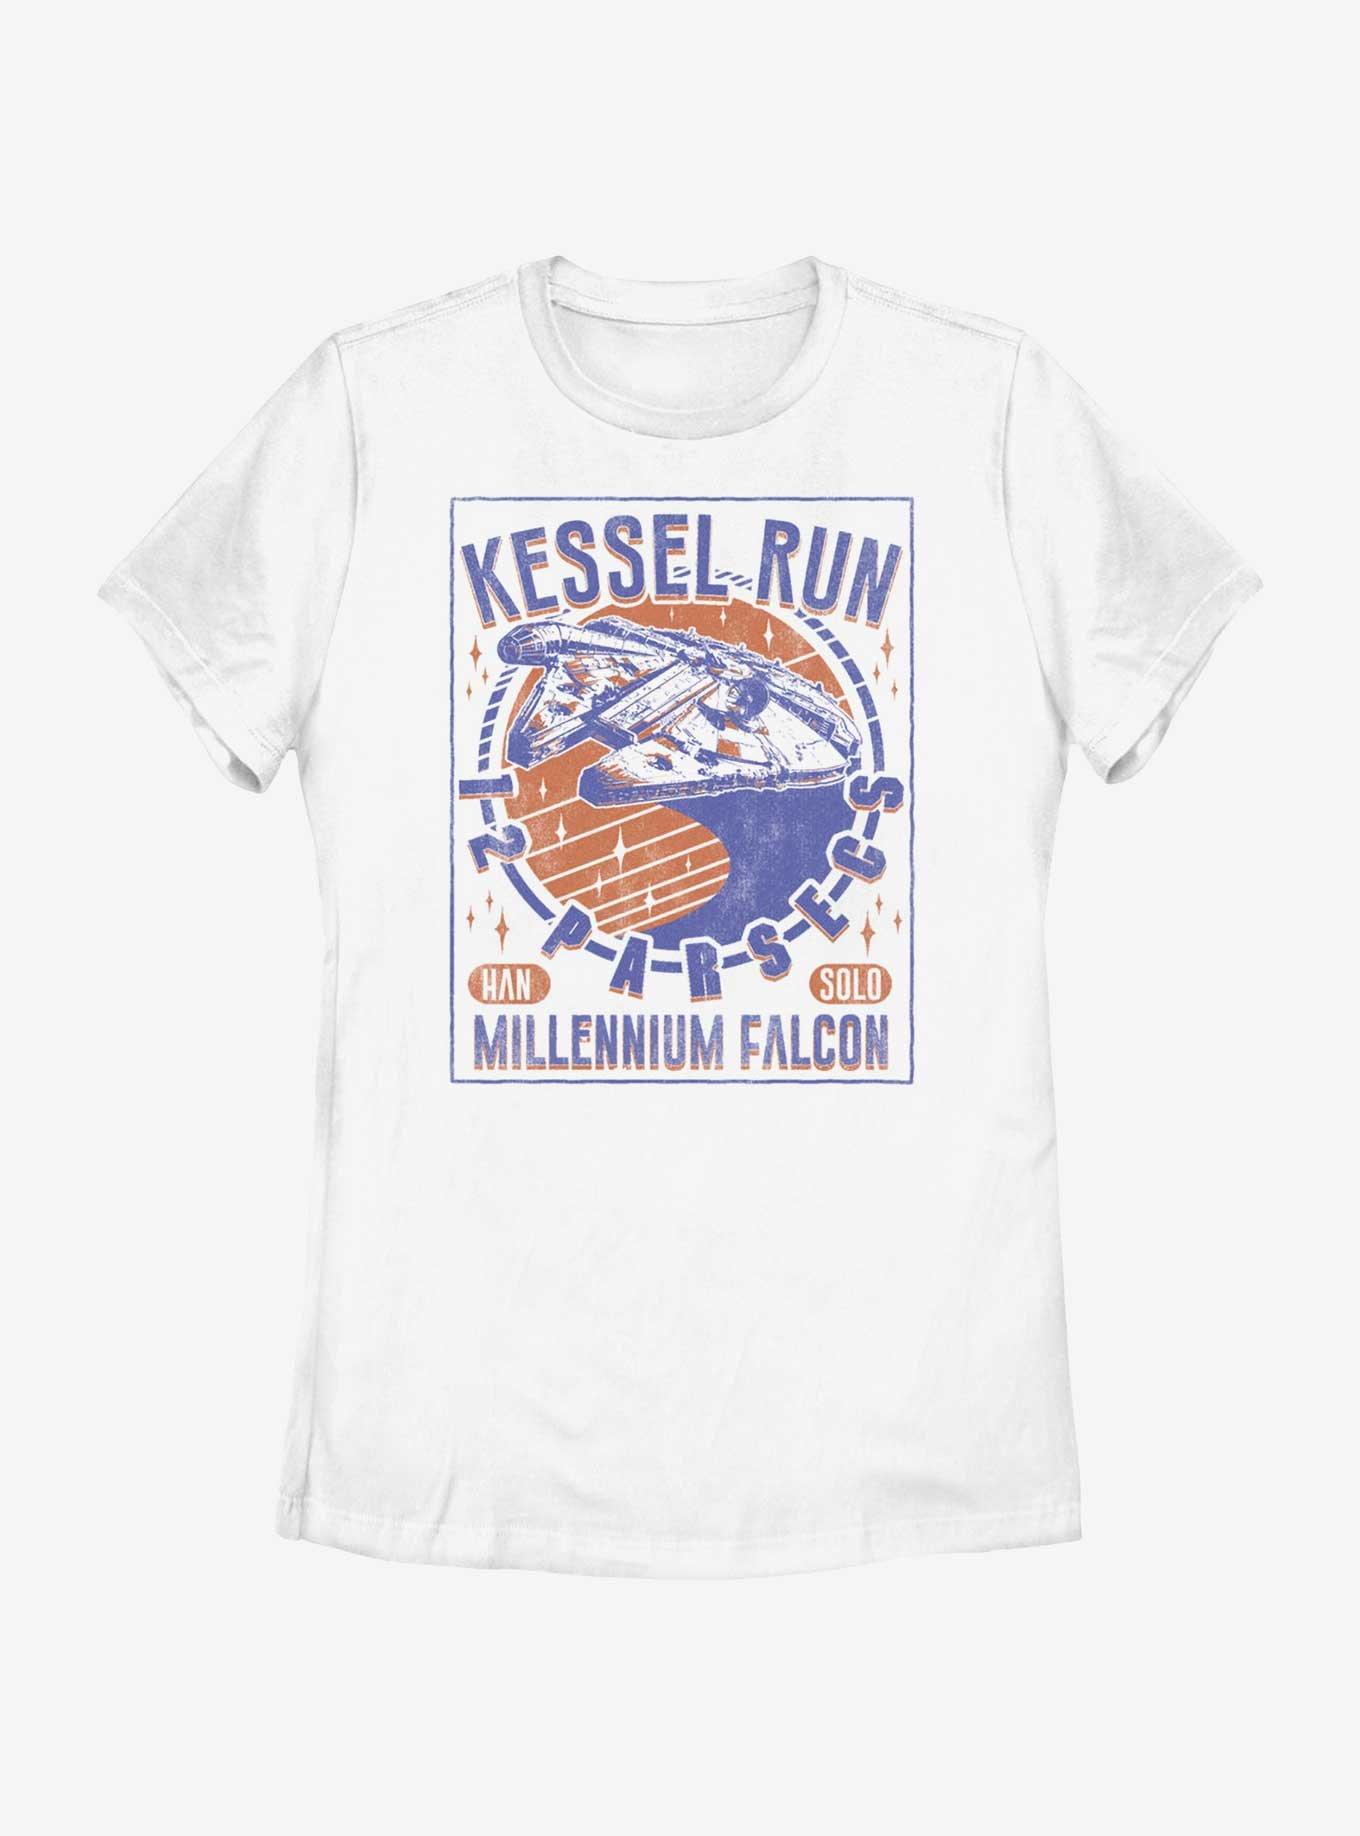 Star Wars Kessel Run Millennium Falcon Womens T-Shirt, WHITE, hi-res